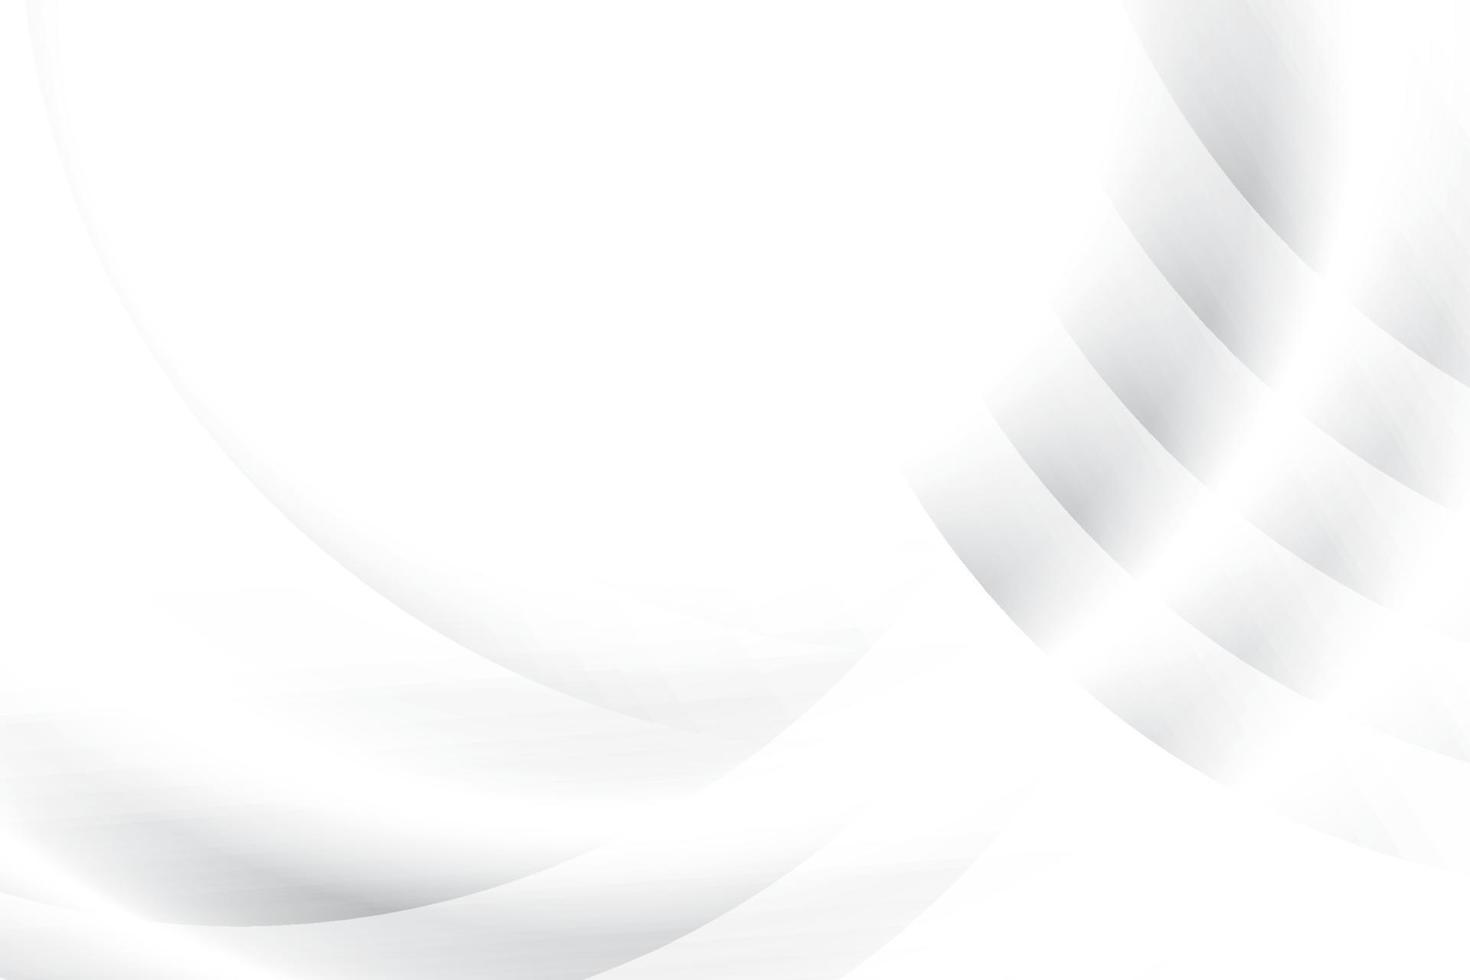 abstrakt vit och grå Färg, modern design bakgrund med geometrisk runda form. vektor illustration.